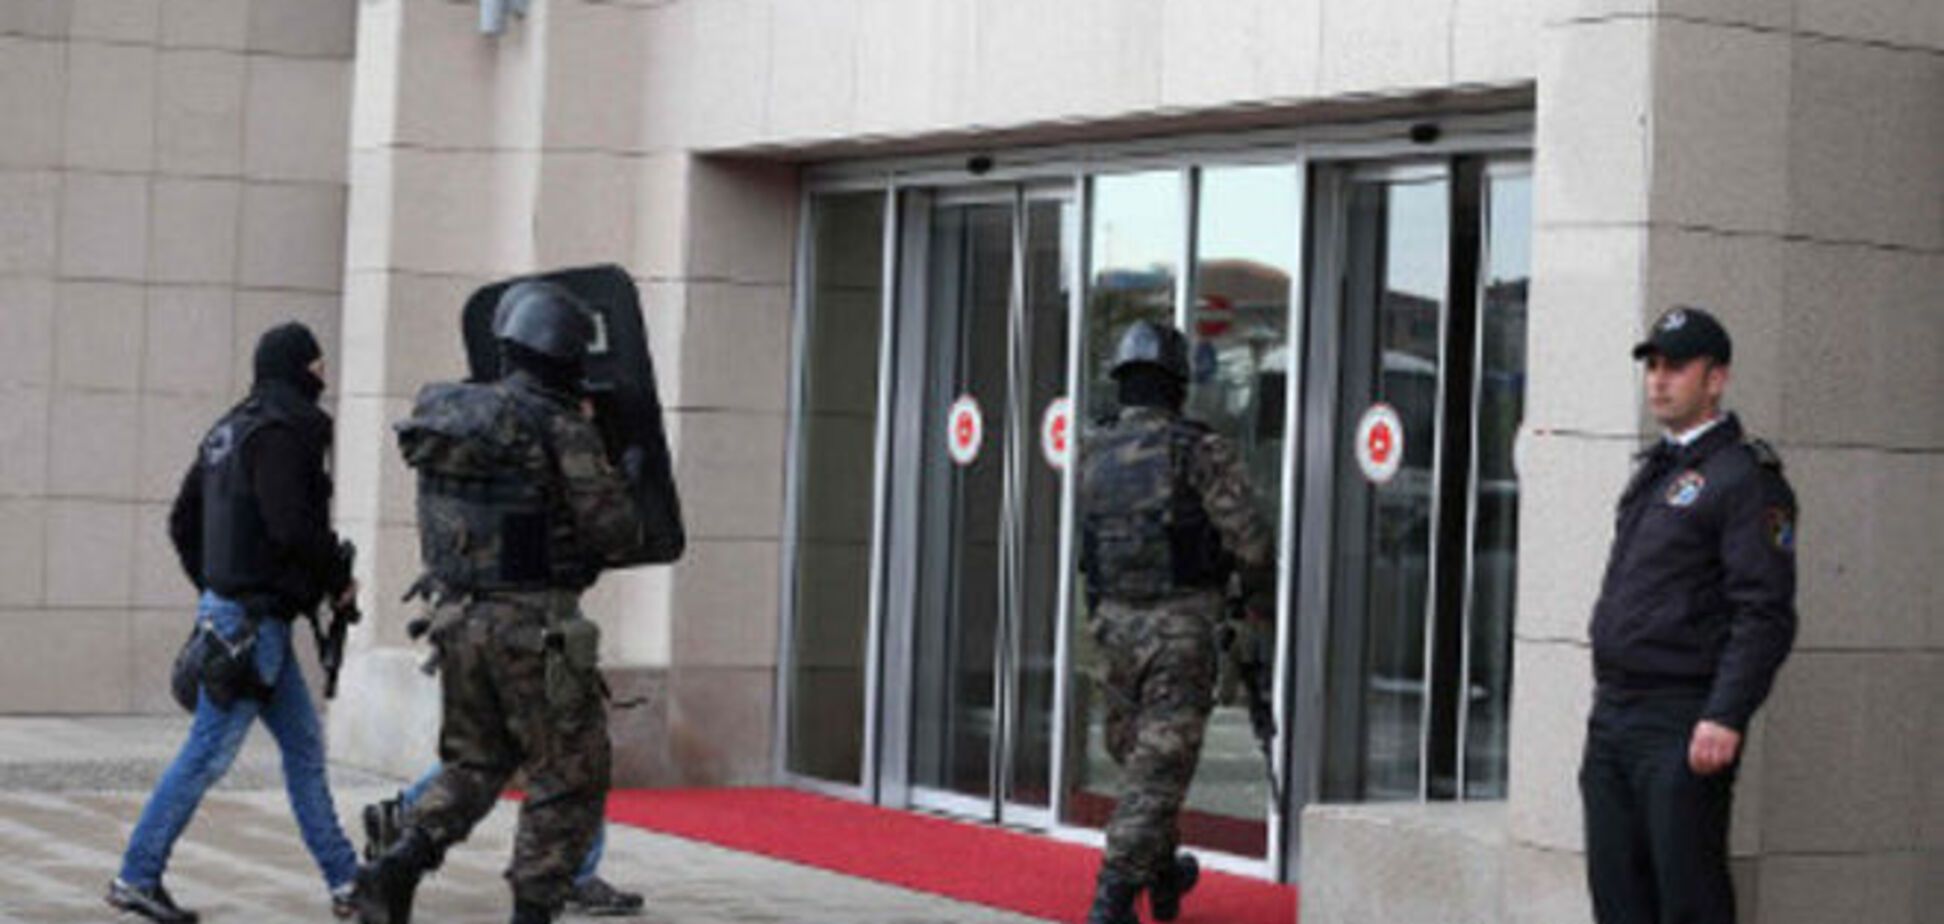 Бойцы спецназа освободили захваченного в Стамбуле прокурора